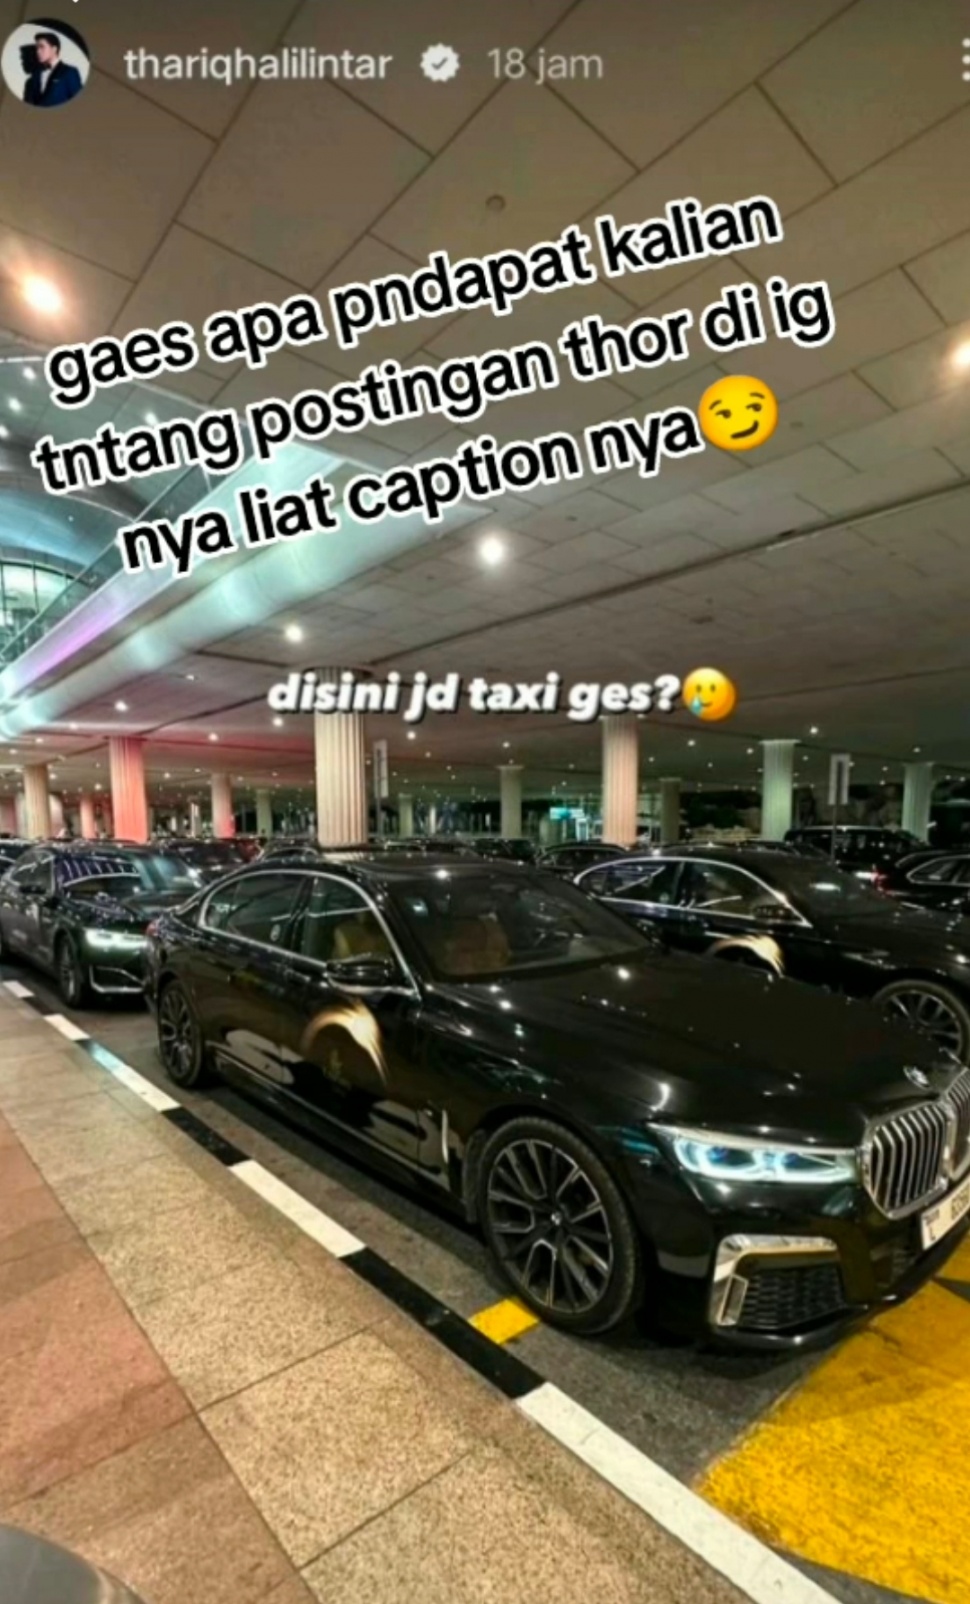 Postingan Thariq Halilintar Tentang Mobil BMW Dijadikan Taksi di Dubai (TikTok/@wine_cjr)